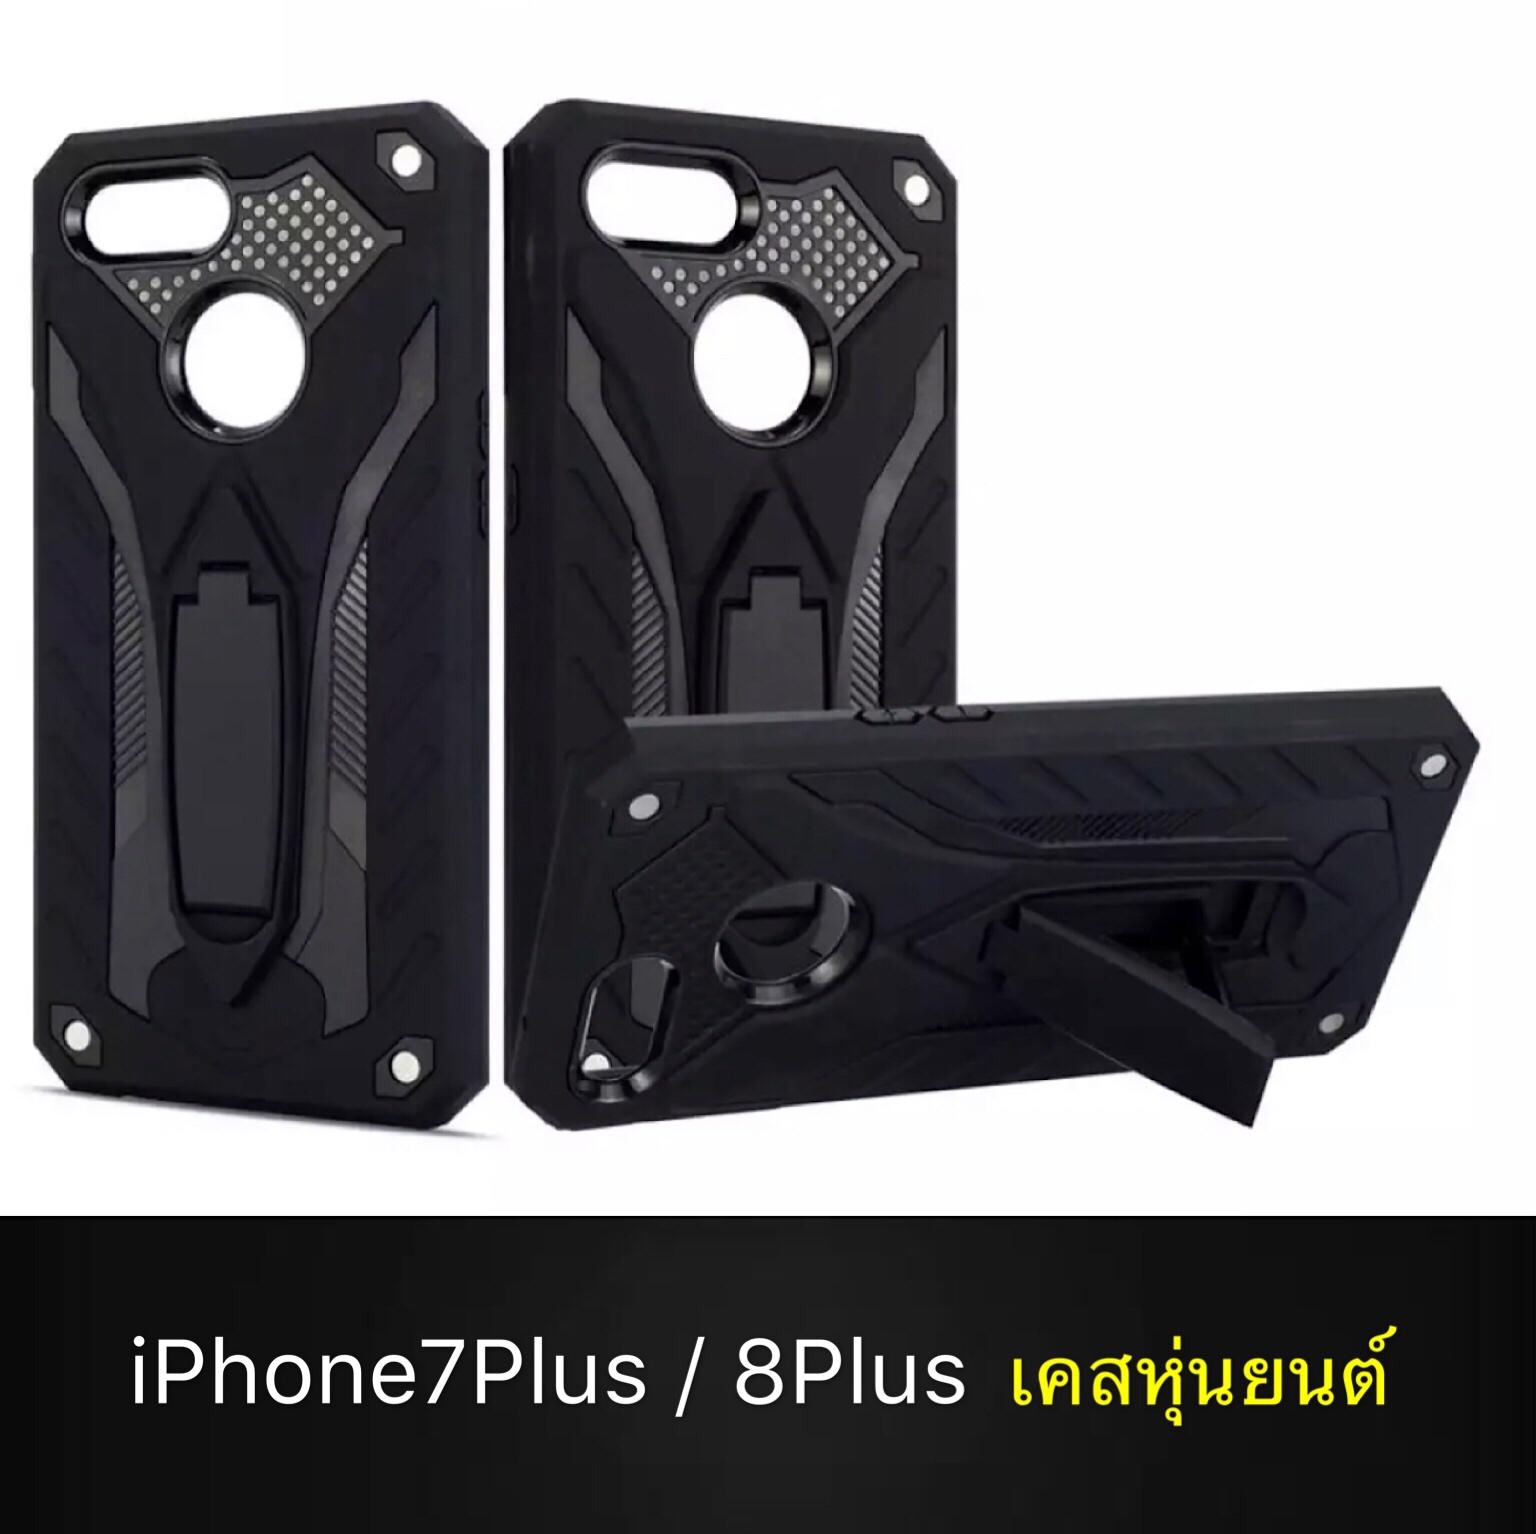 Case iPhone7Plus / 8Plus เคสไอโฟน6 iPhone 7Plus / 8plus เคสหุ่นยนต์ เคสไฮบริด มีขาตั้ง เคสกันกระแทก สินค้าใหม่ TPU CASE สี ดำ